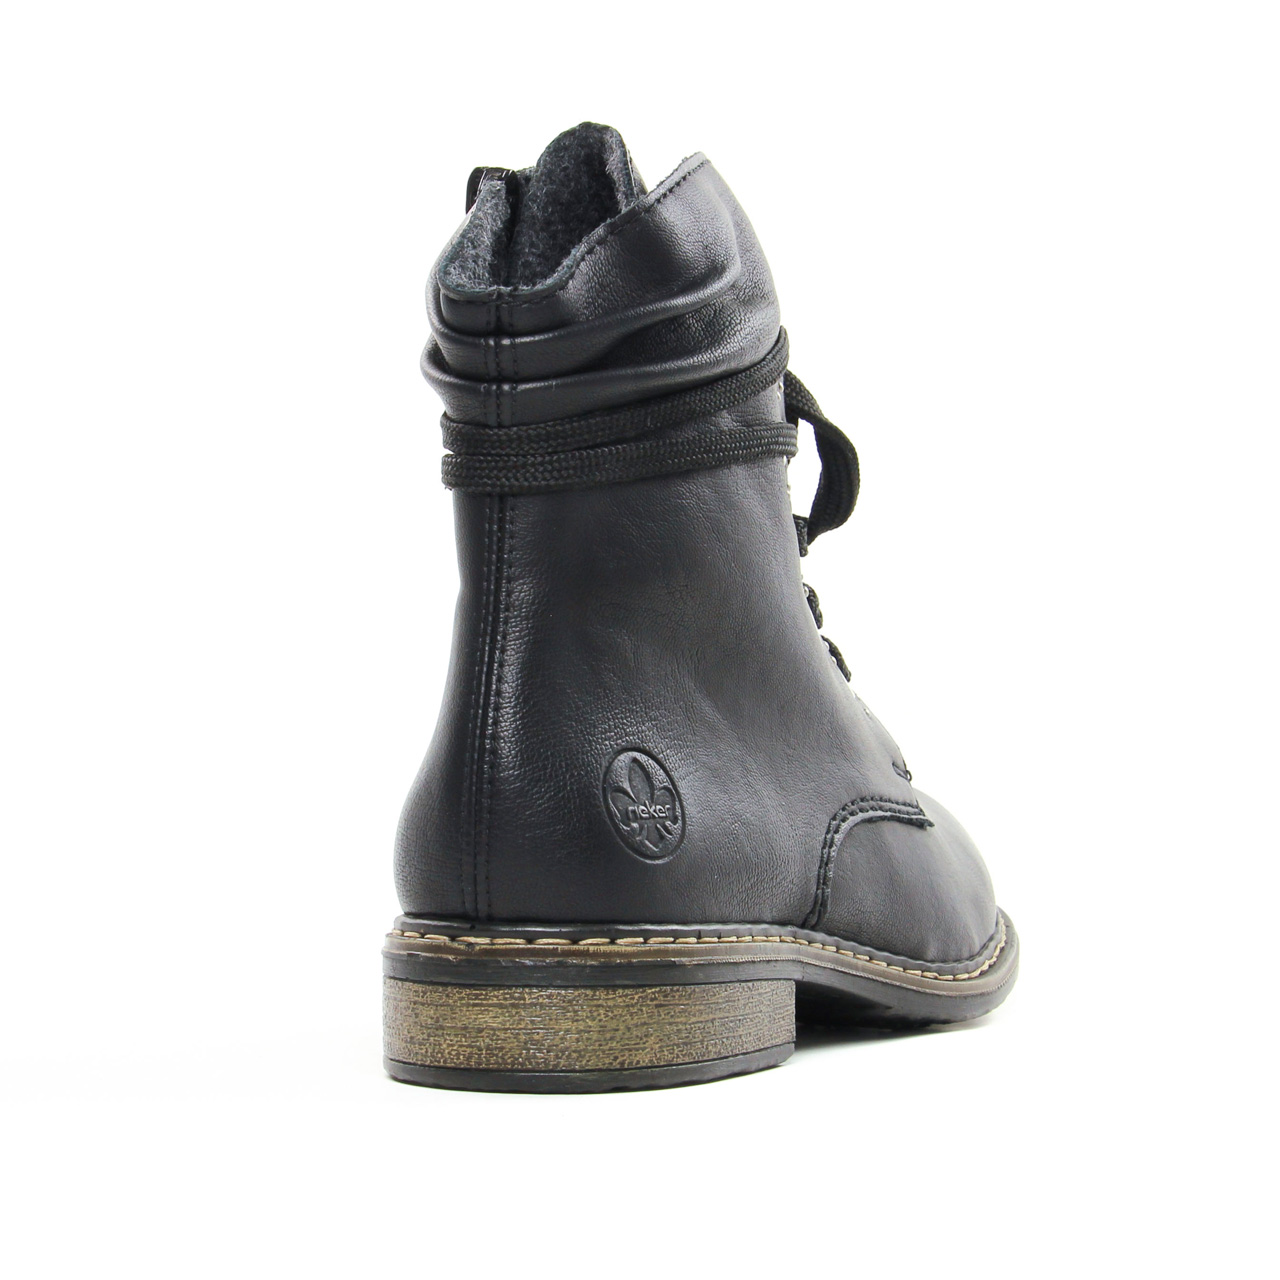 Femme Chaussures Bottes Bottes hauteur mi-mollet Casual textile boots Rieker en coloris Noir 